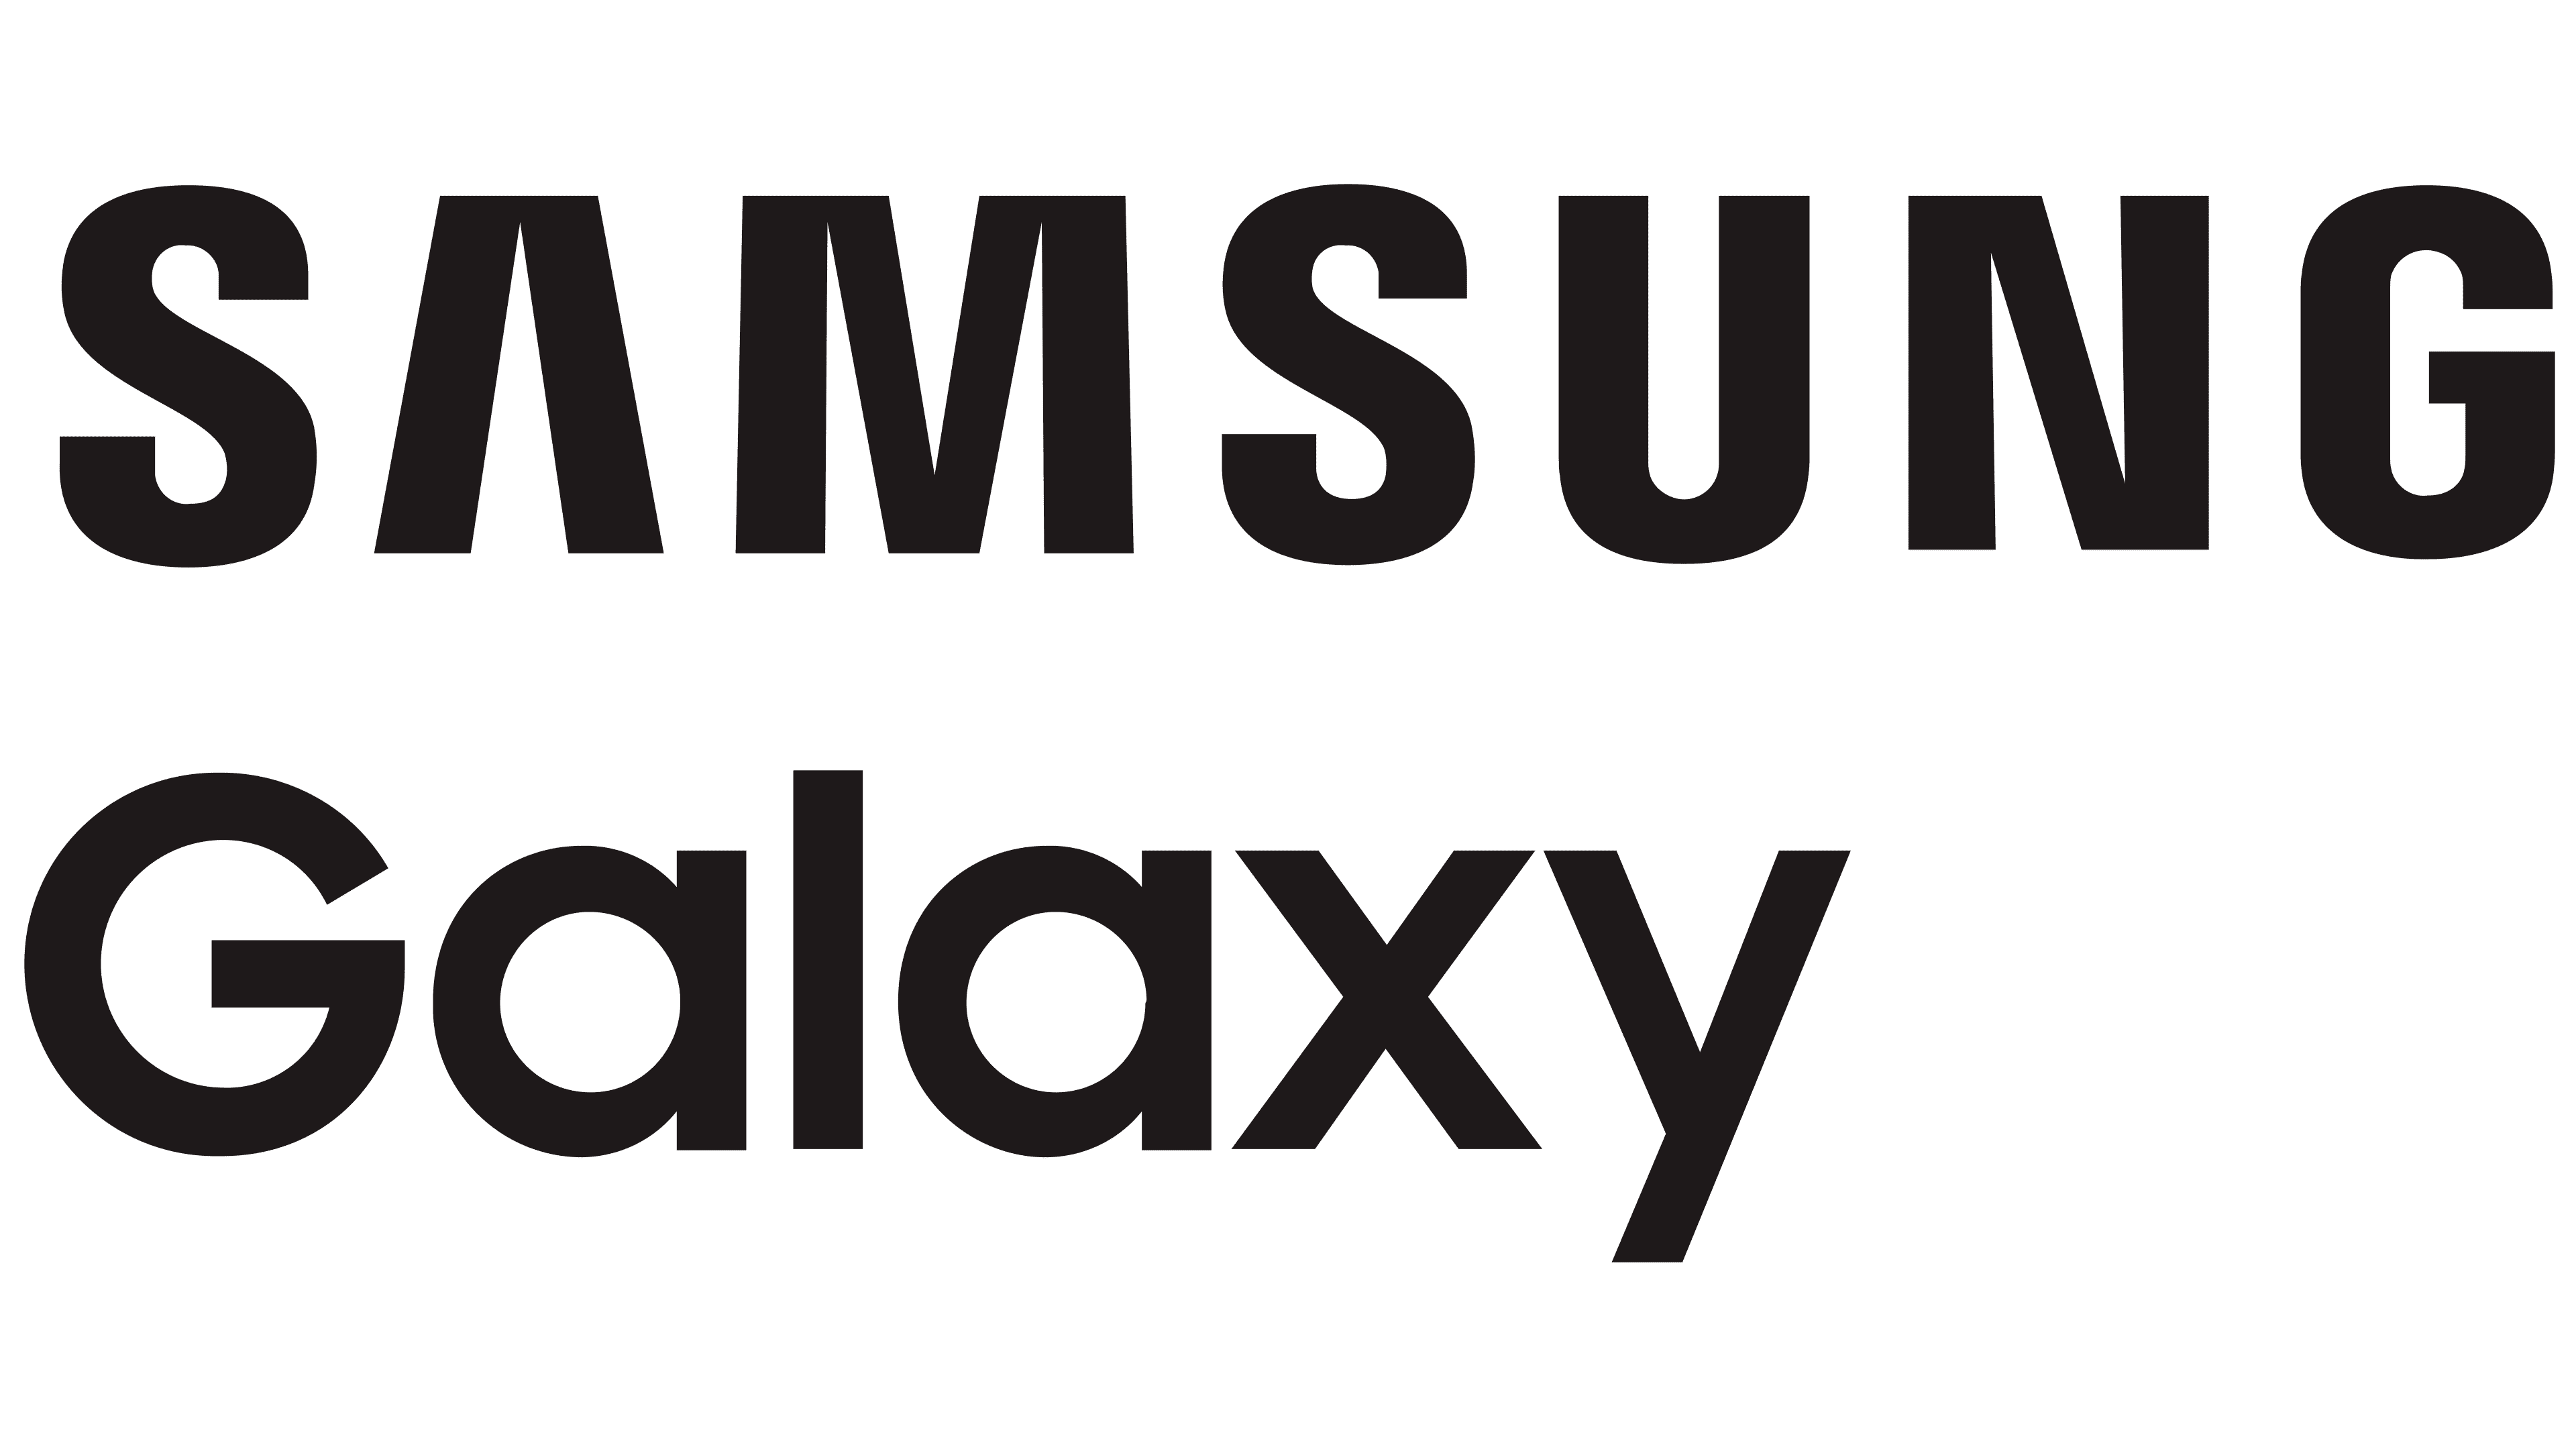 Samsung-Galaxy-Logo